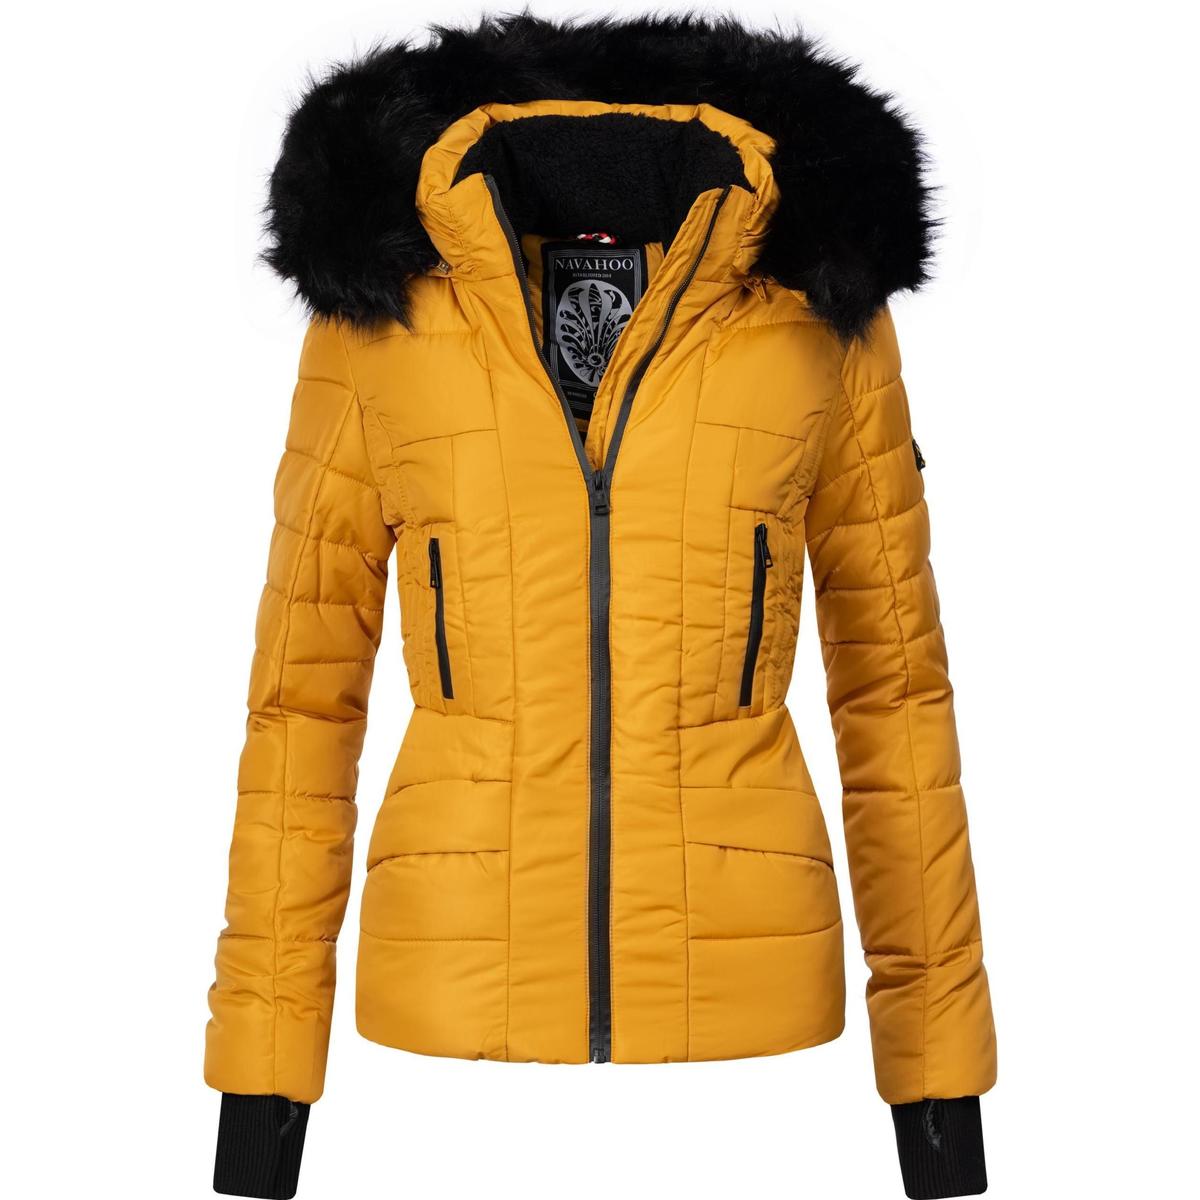 Navahoo Winterjacke Adele Gelb - Kleidung Jacken Damen 119,95 €